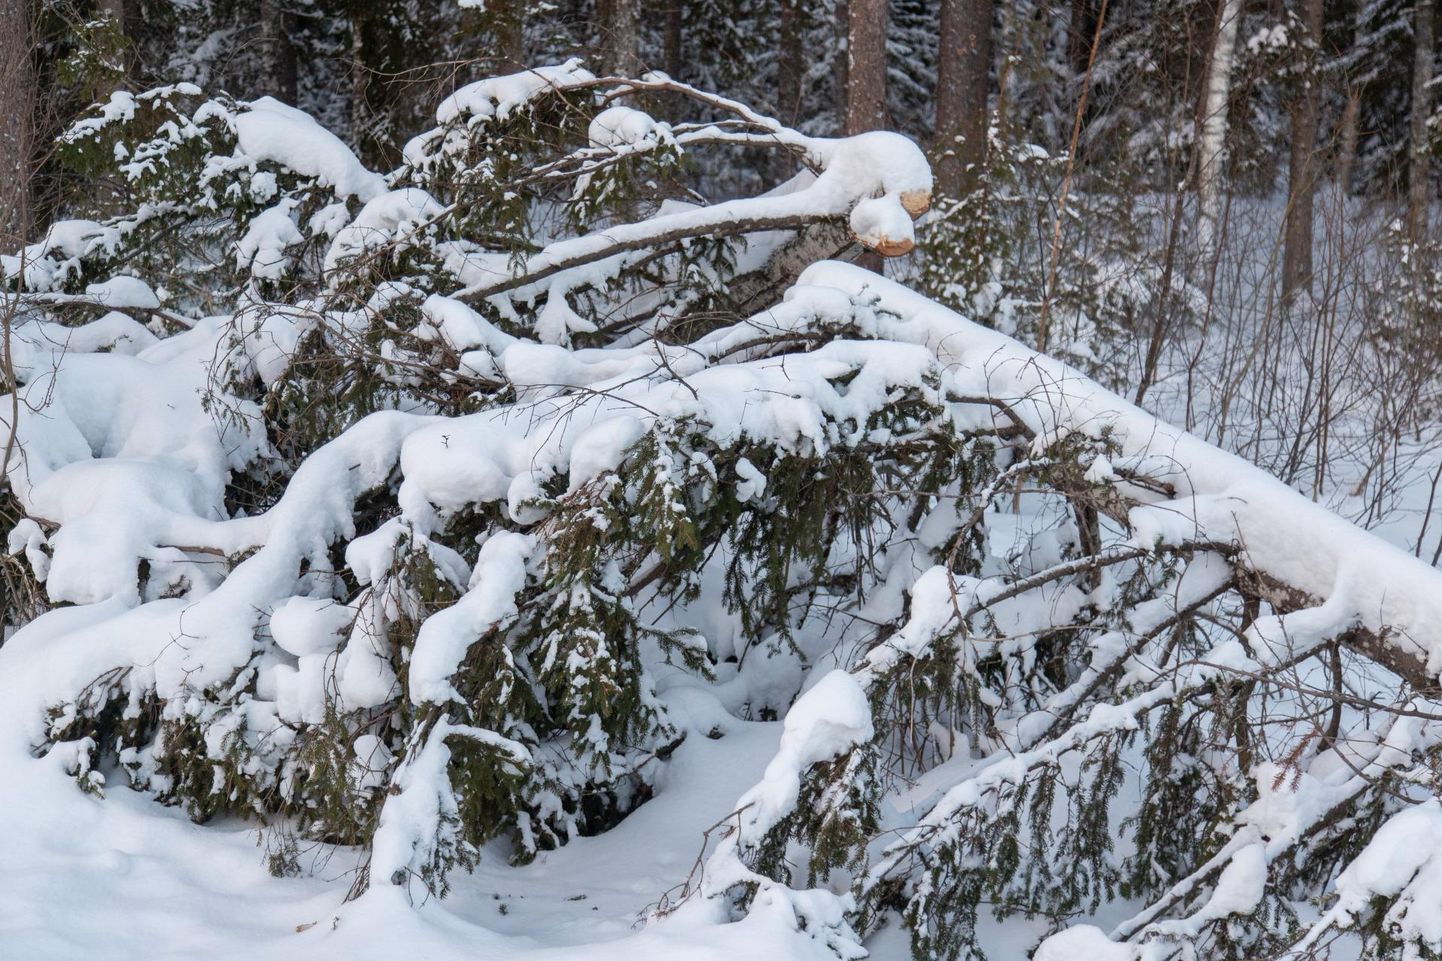 Lõppenud talvel murdus metsades lume raskuste all palju
männioksi, mis võib uusi kahjusid põhjustada.